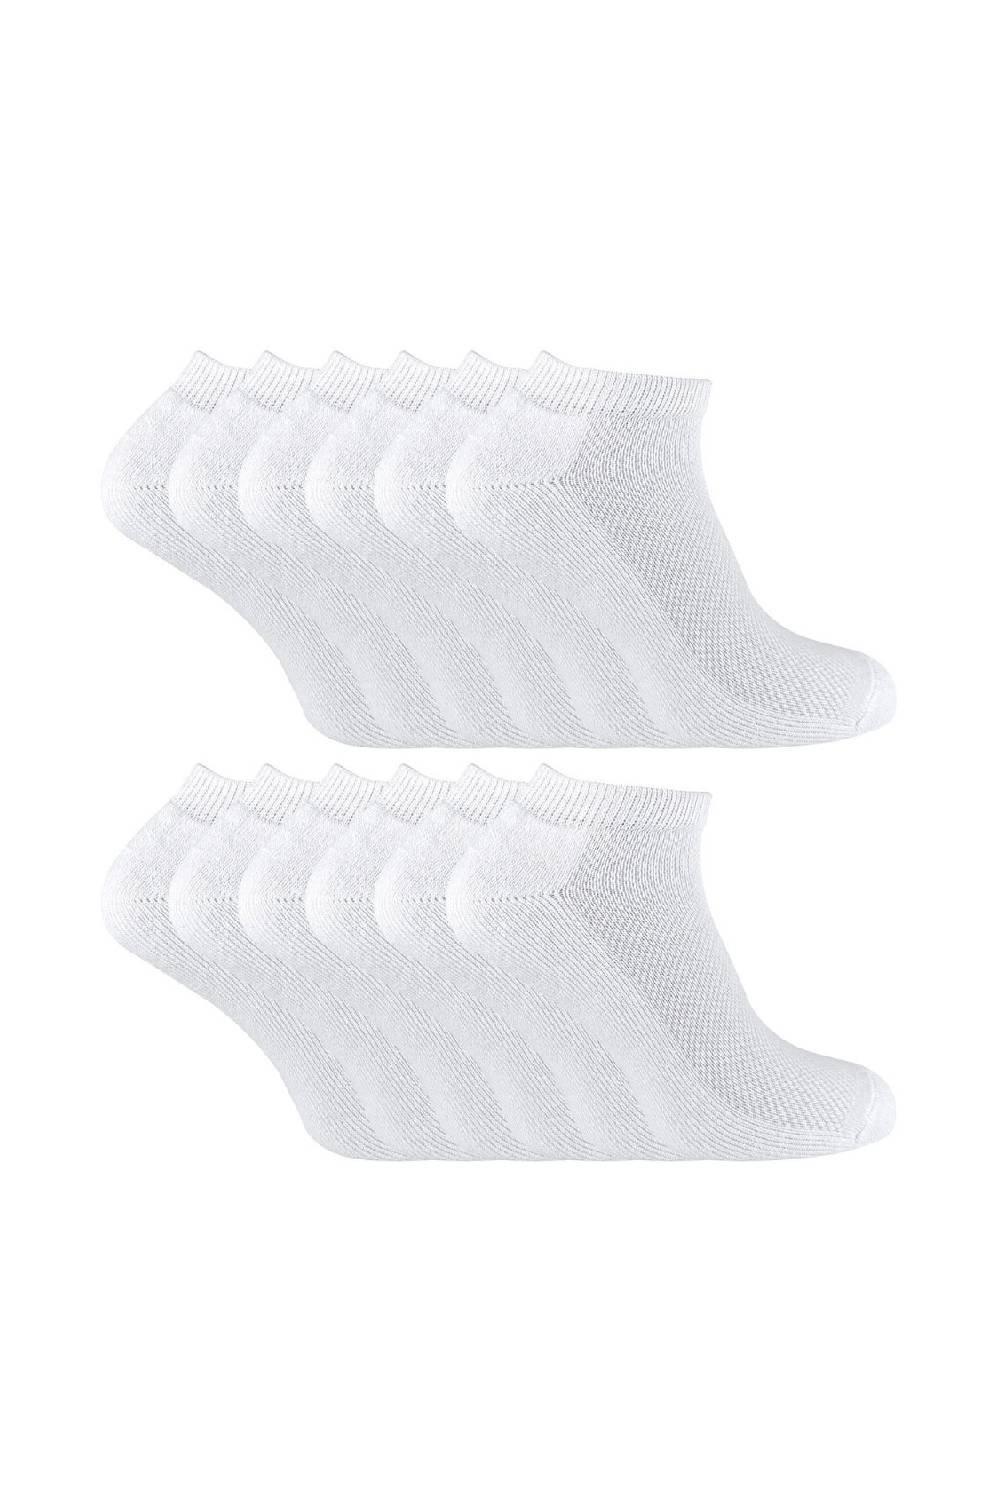 12 пар низких спортивных носков для бега из мягкого бамбука Sock Snob, белый